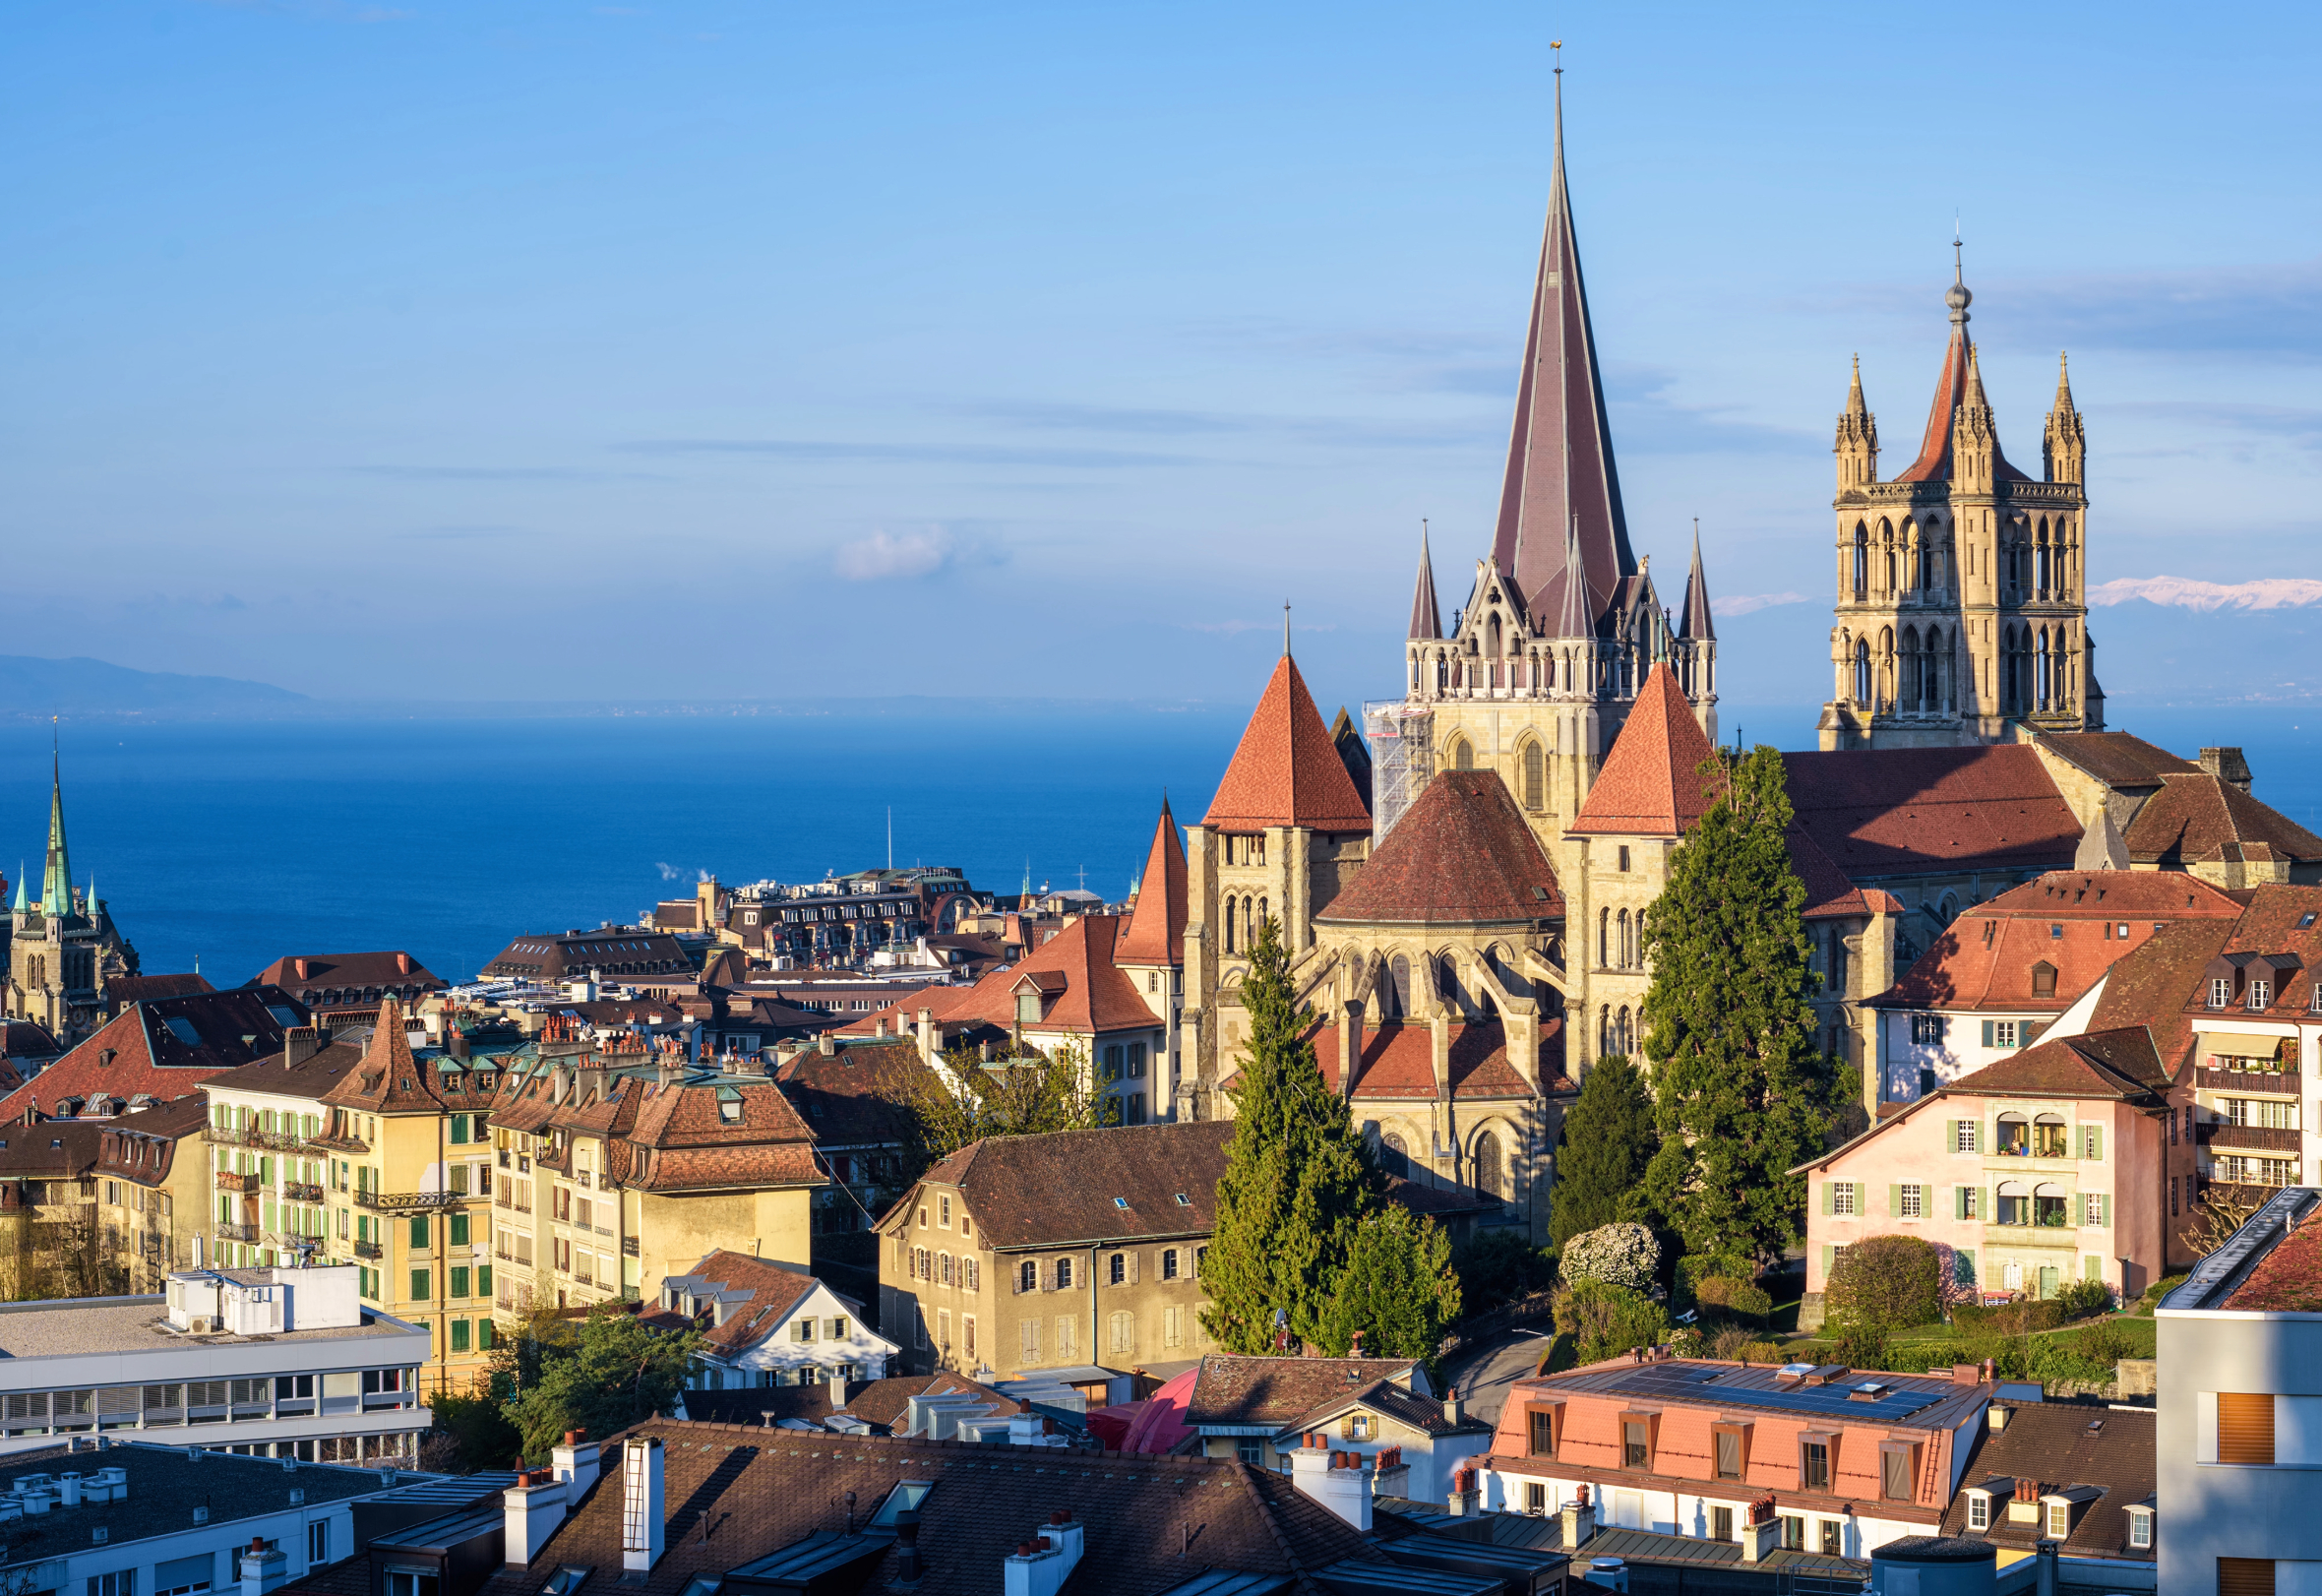 Spécialiste de l'optimisation de la performance industrielle, OPEO a choisi la ville de Lausanne comme emplacement pour sa filiale suisse.